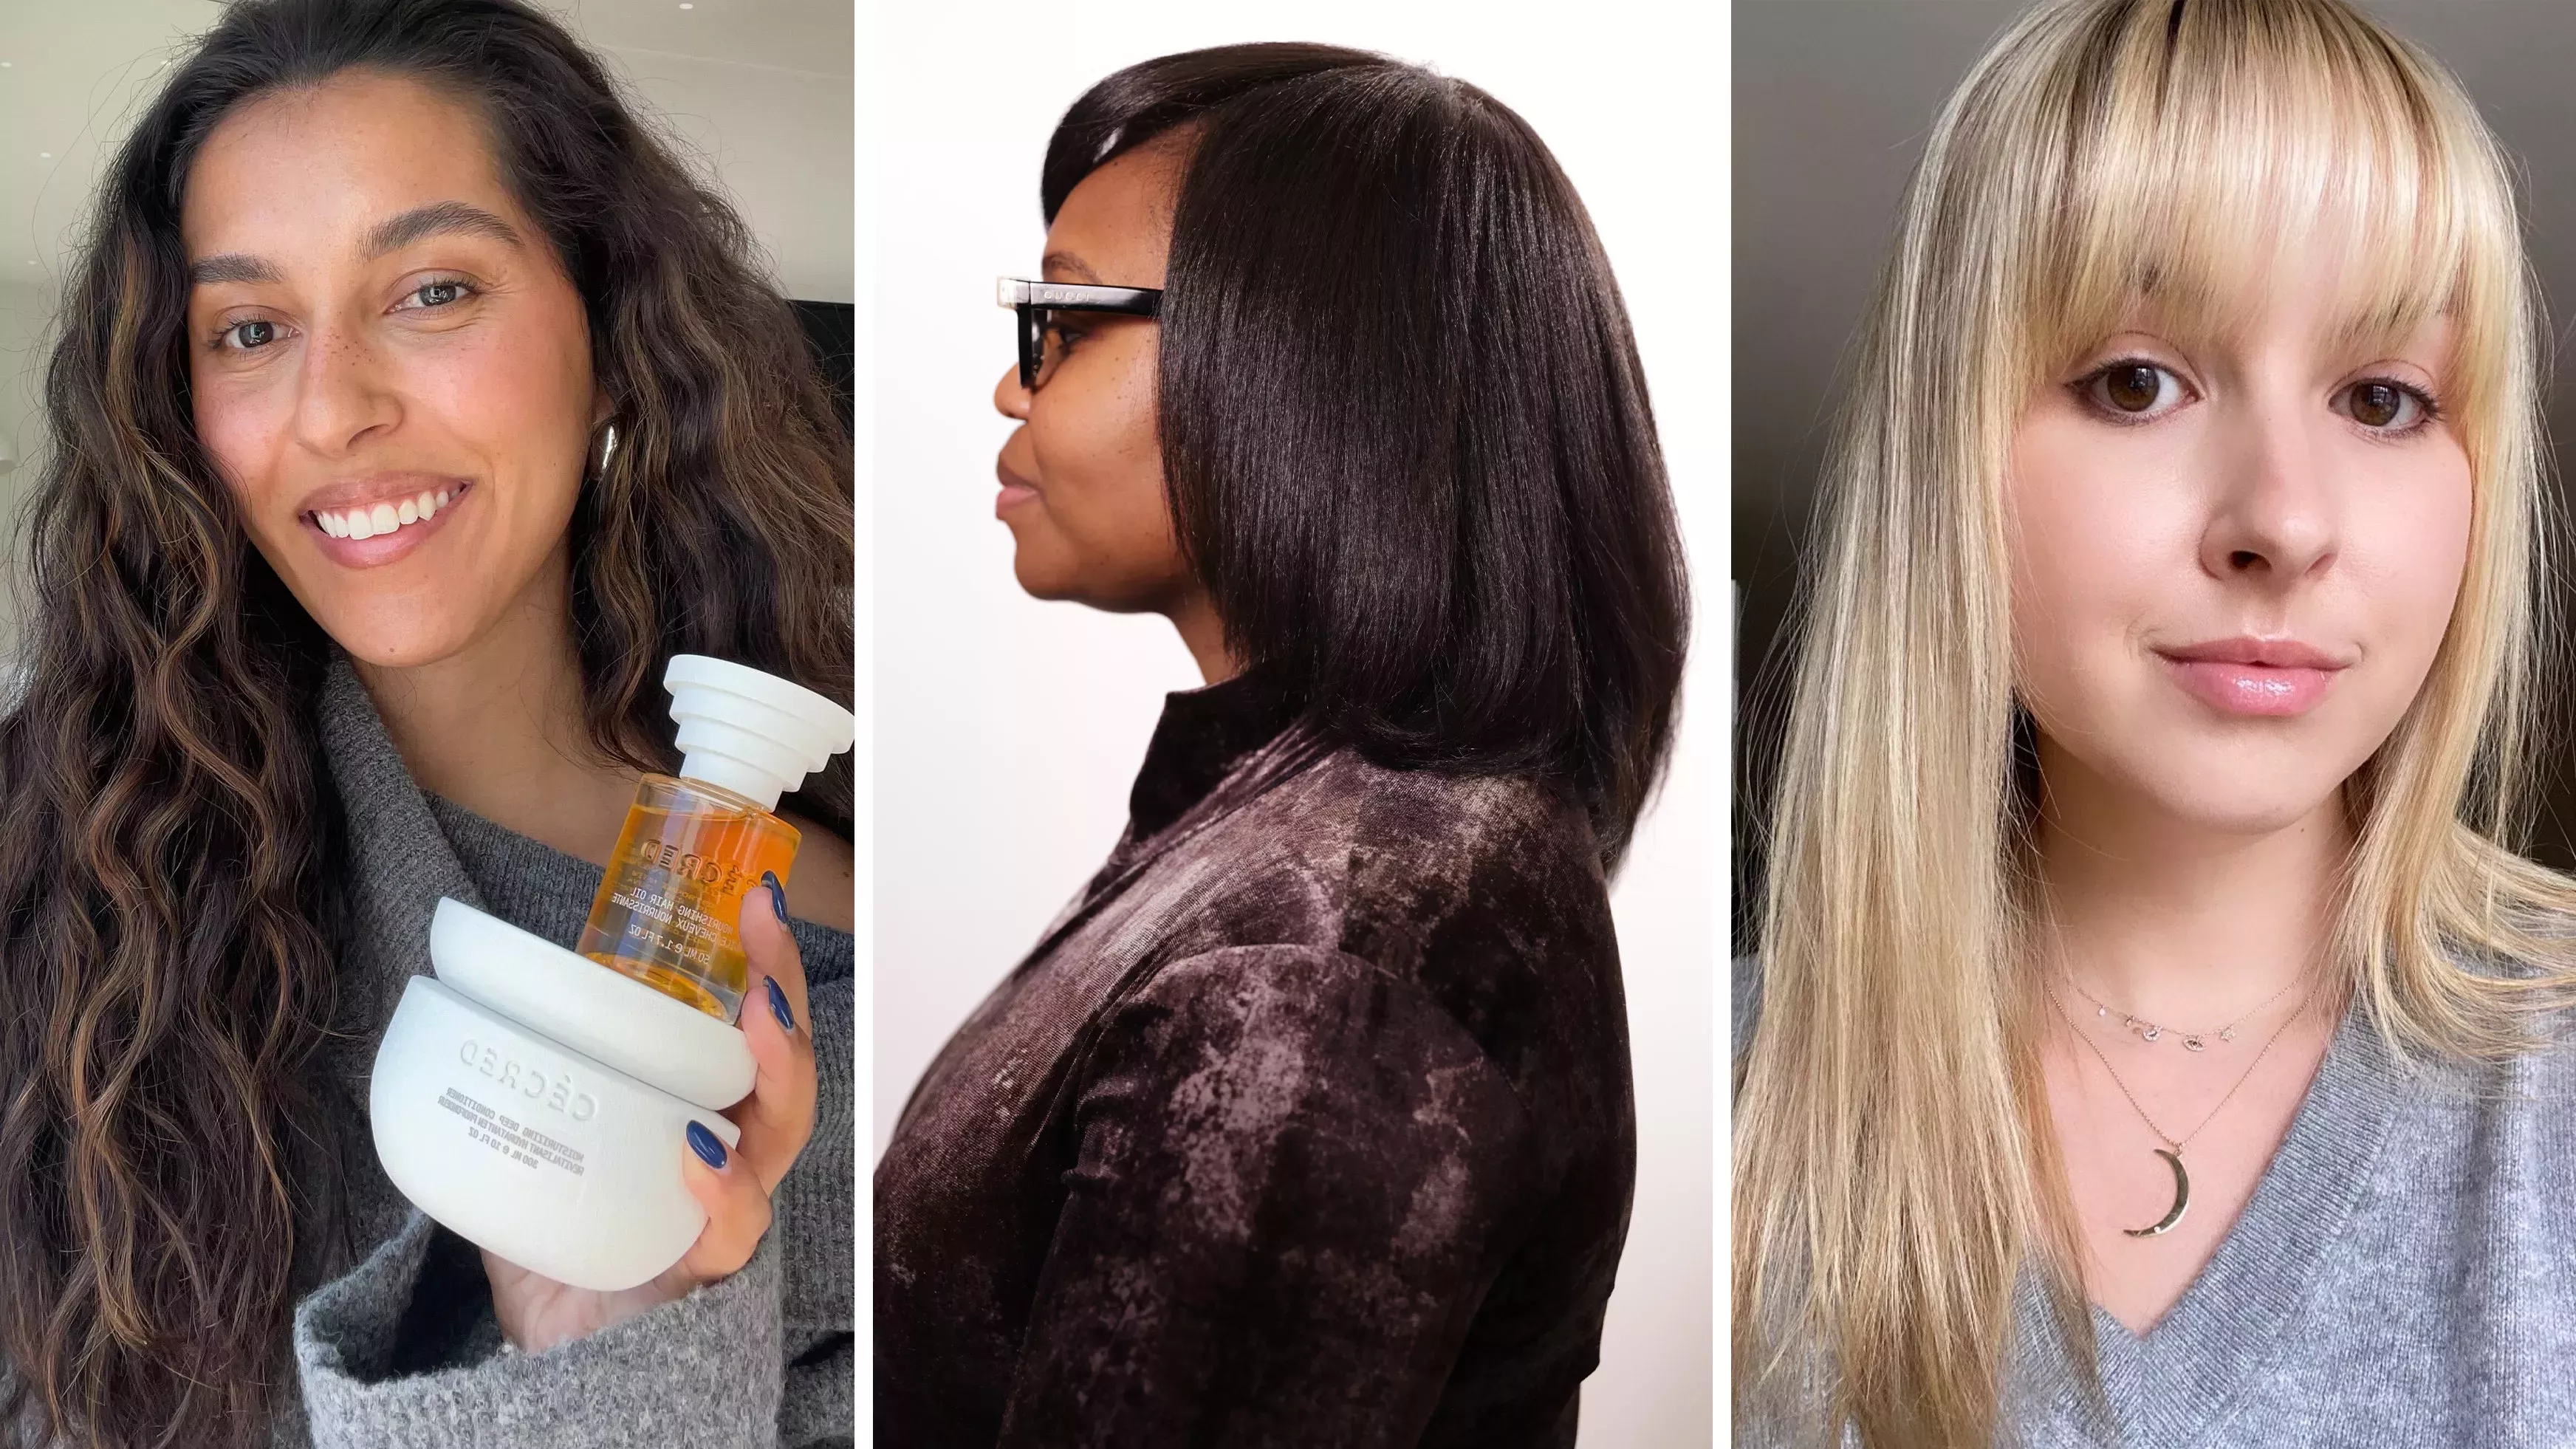 Probamos la nueva línea de cuidado capilar de Beyoncé, Cécred, en 3 tipos de cabello diferentes